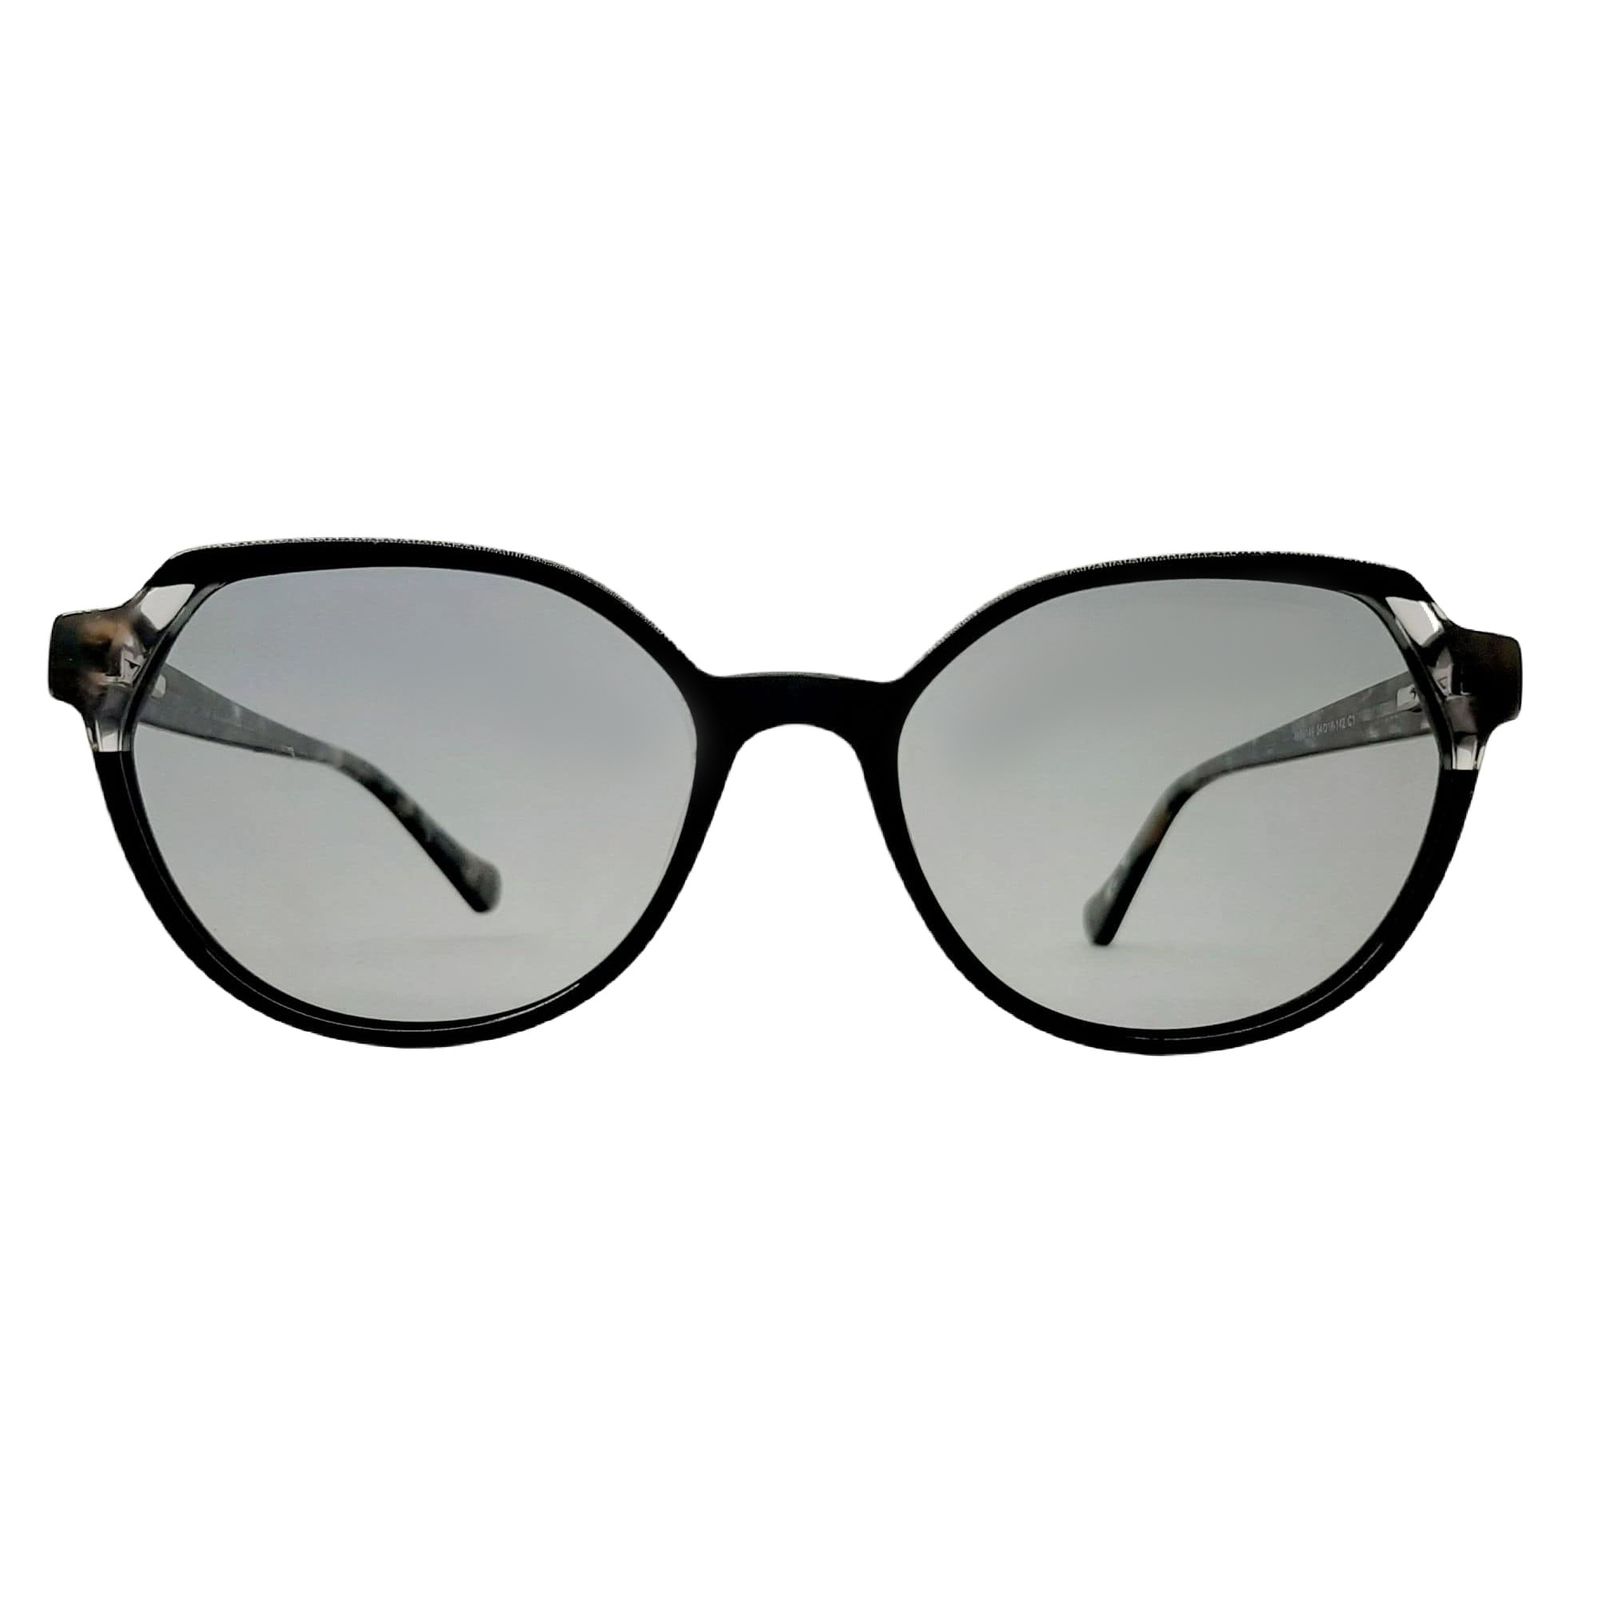 عینک آفتابی تد بیکر مدل MG6148c1